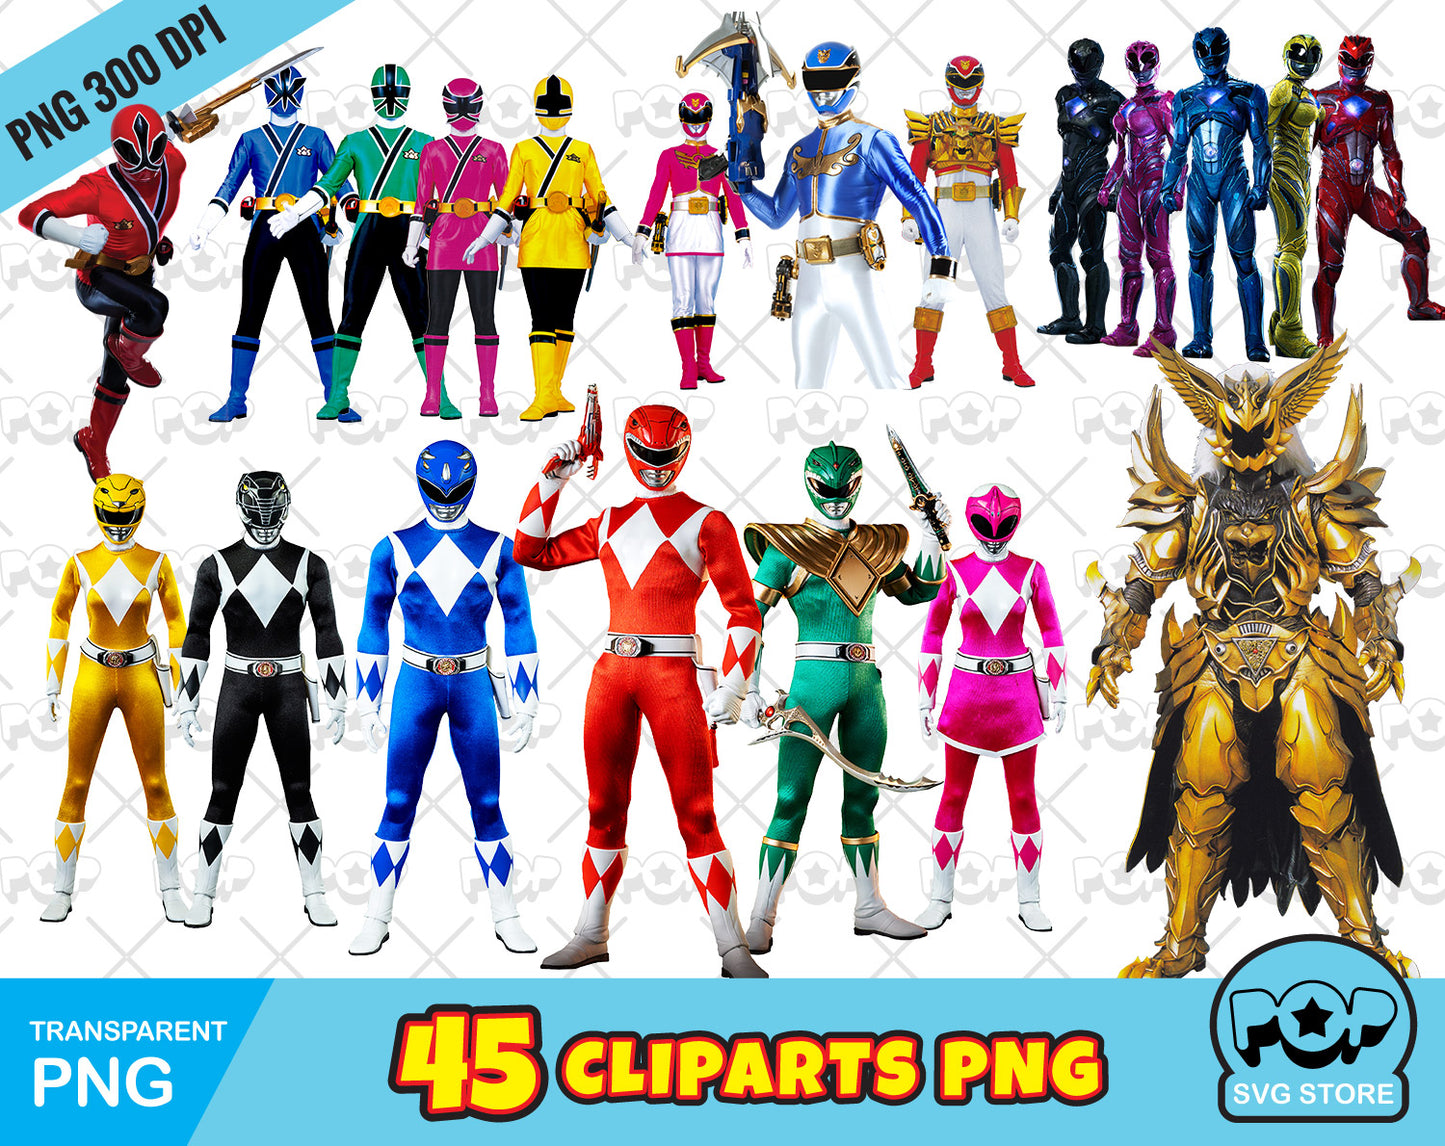 Power Rangers clipart bundle, transparent PNG, designs for decoration / sublimation, instant download